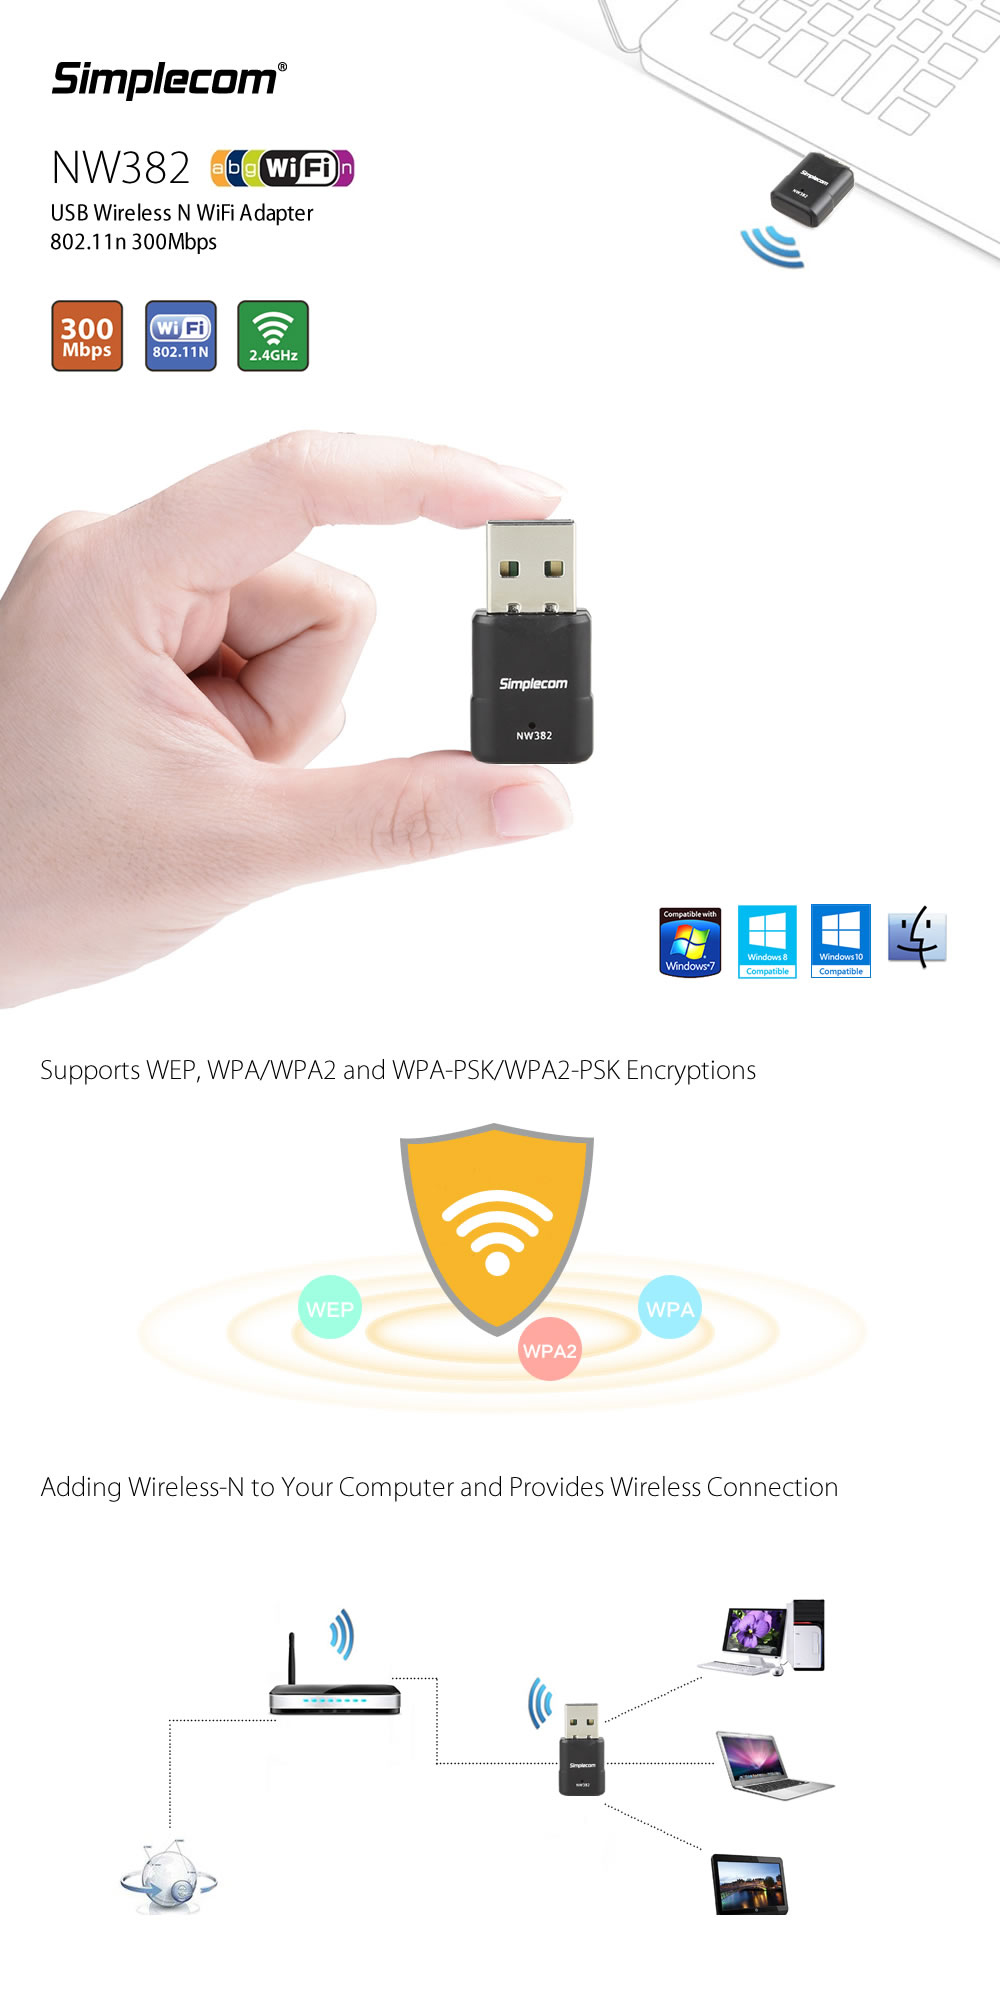 Wireless-USB-Adapters-Simplecom-NW382-N300-Mini-Wi-Fi-USB-Adapter-2